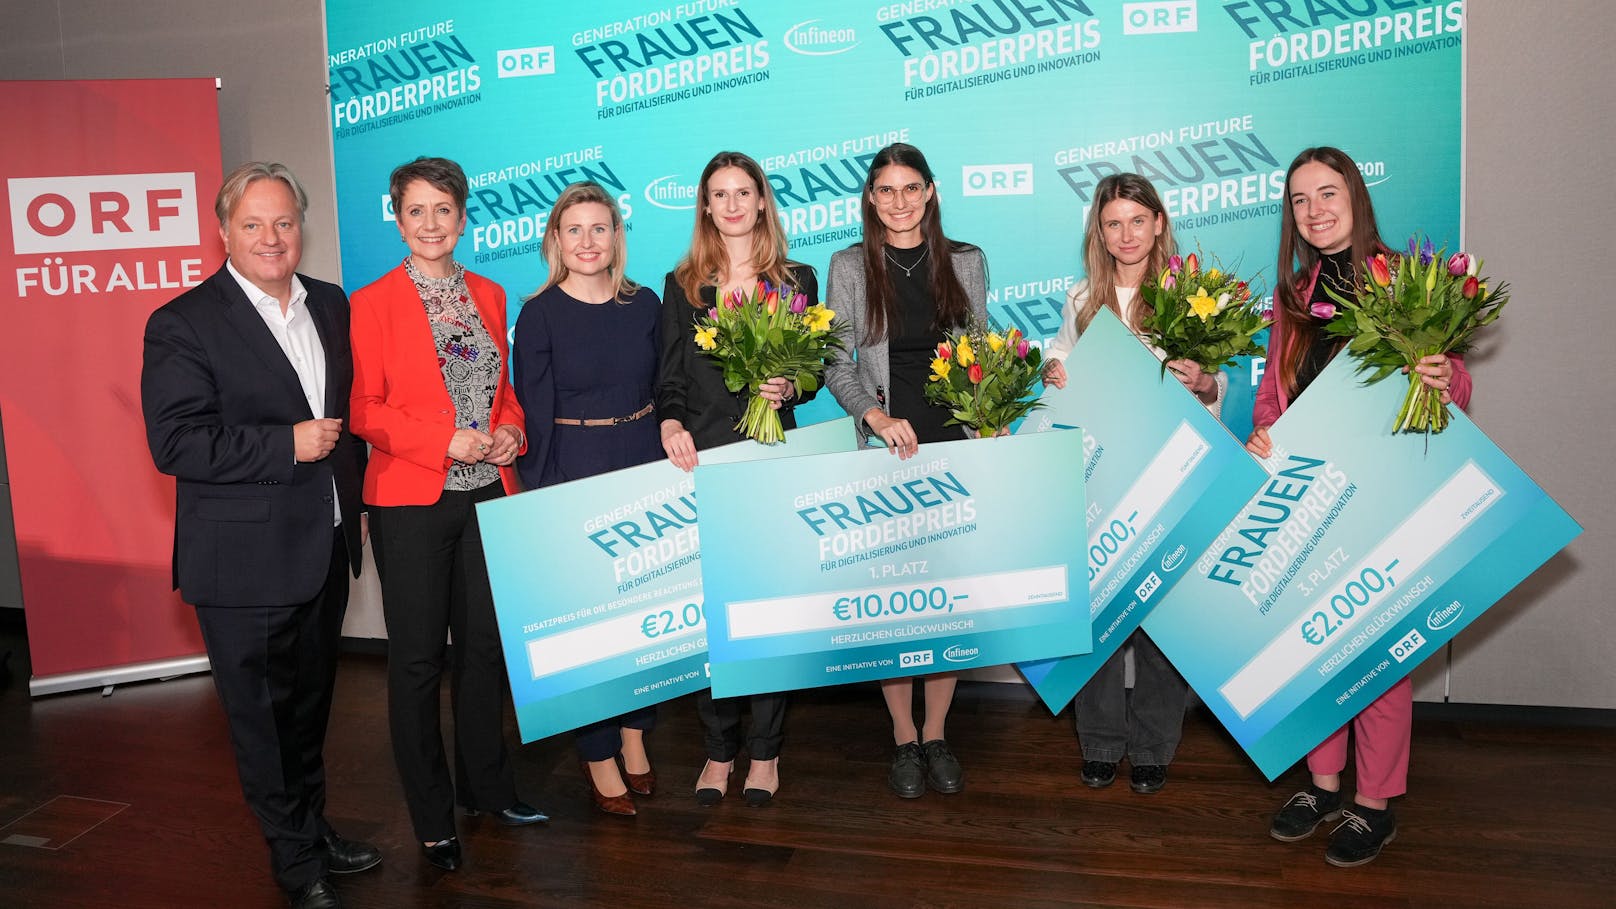 "Frauen-Förderpreis für Digitalisierung und Innovation" wurde zum zweiten Mal verliehen.